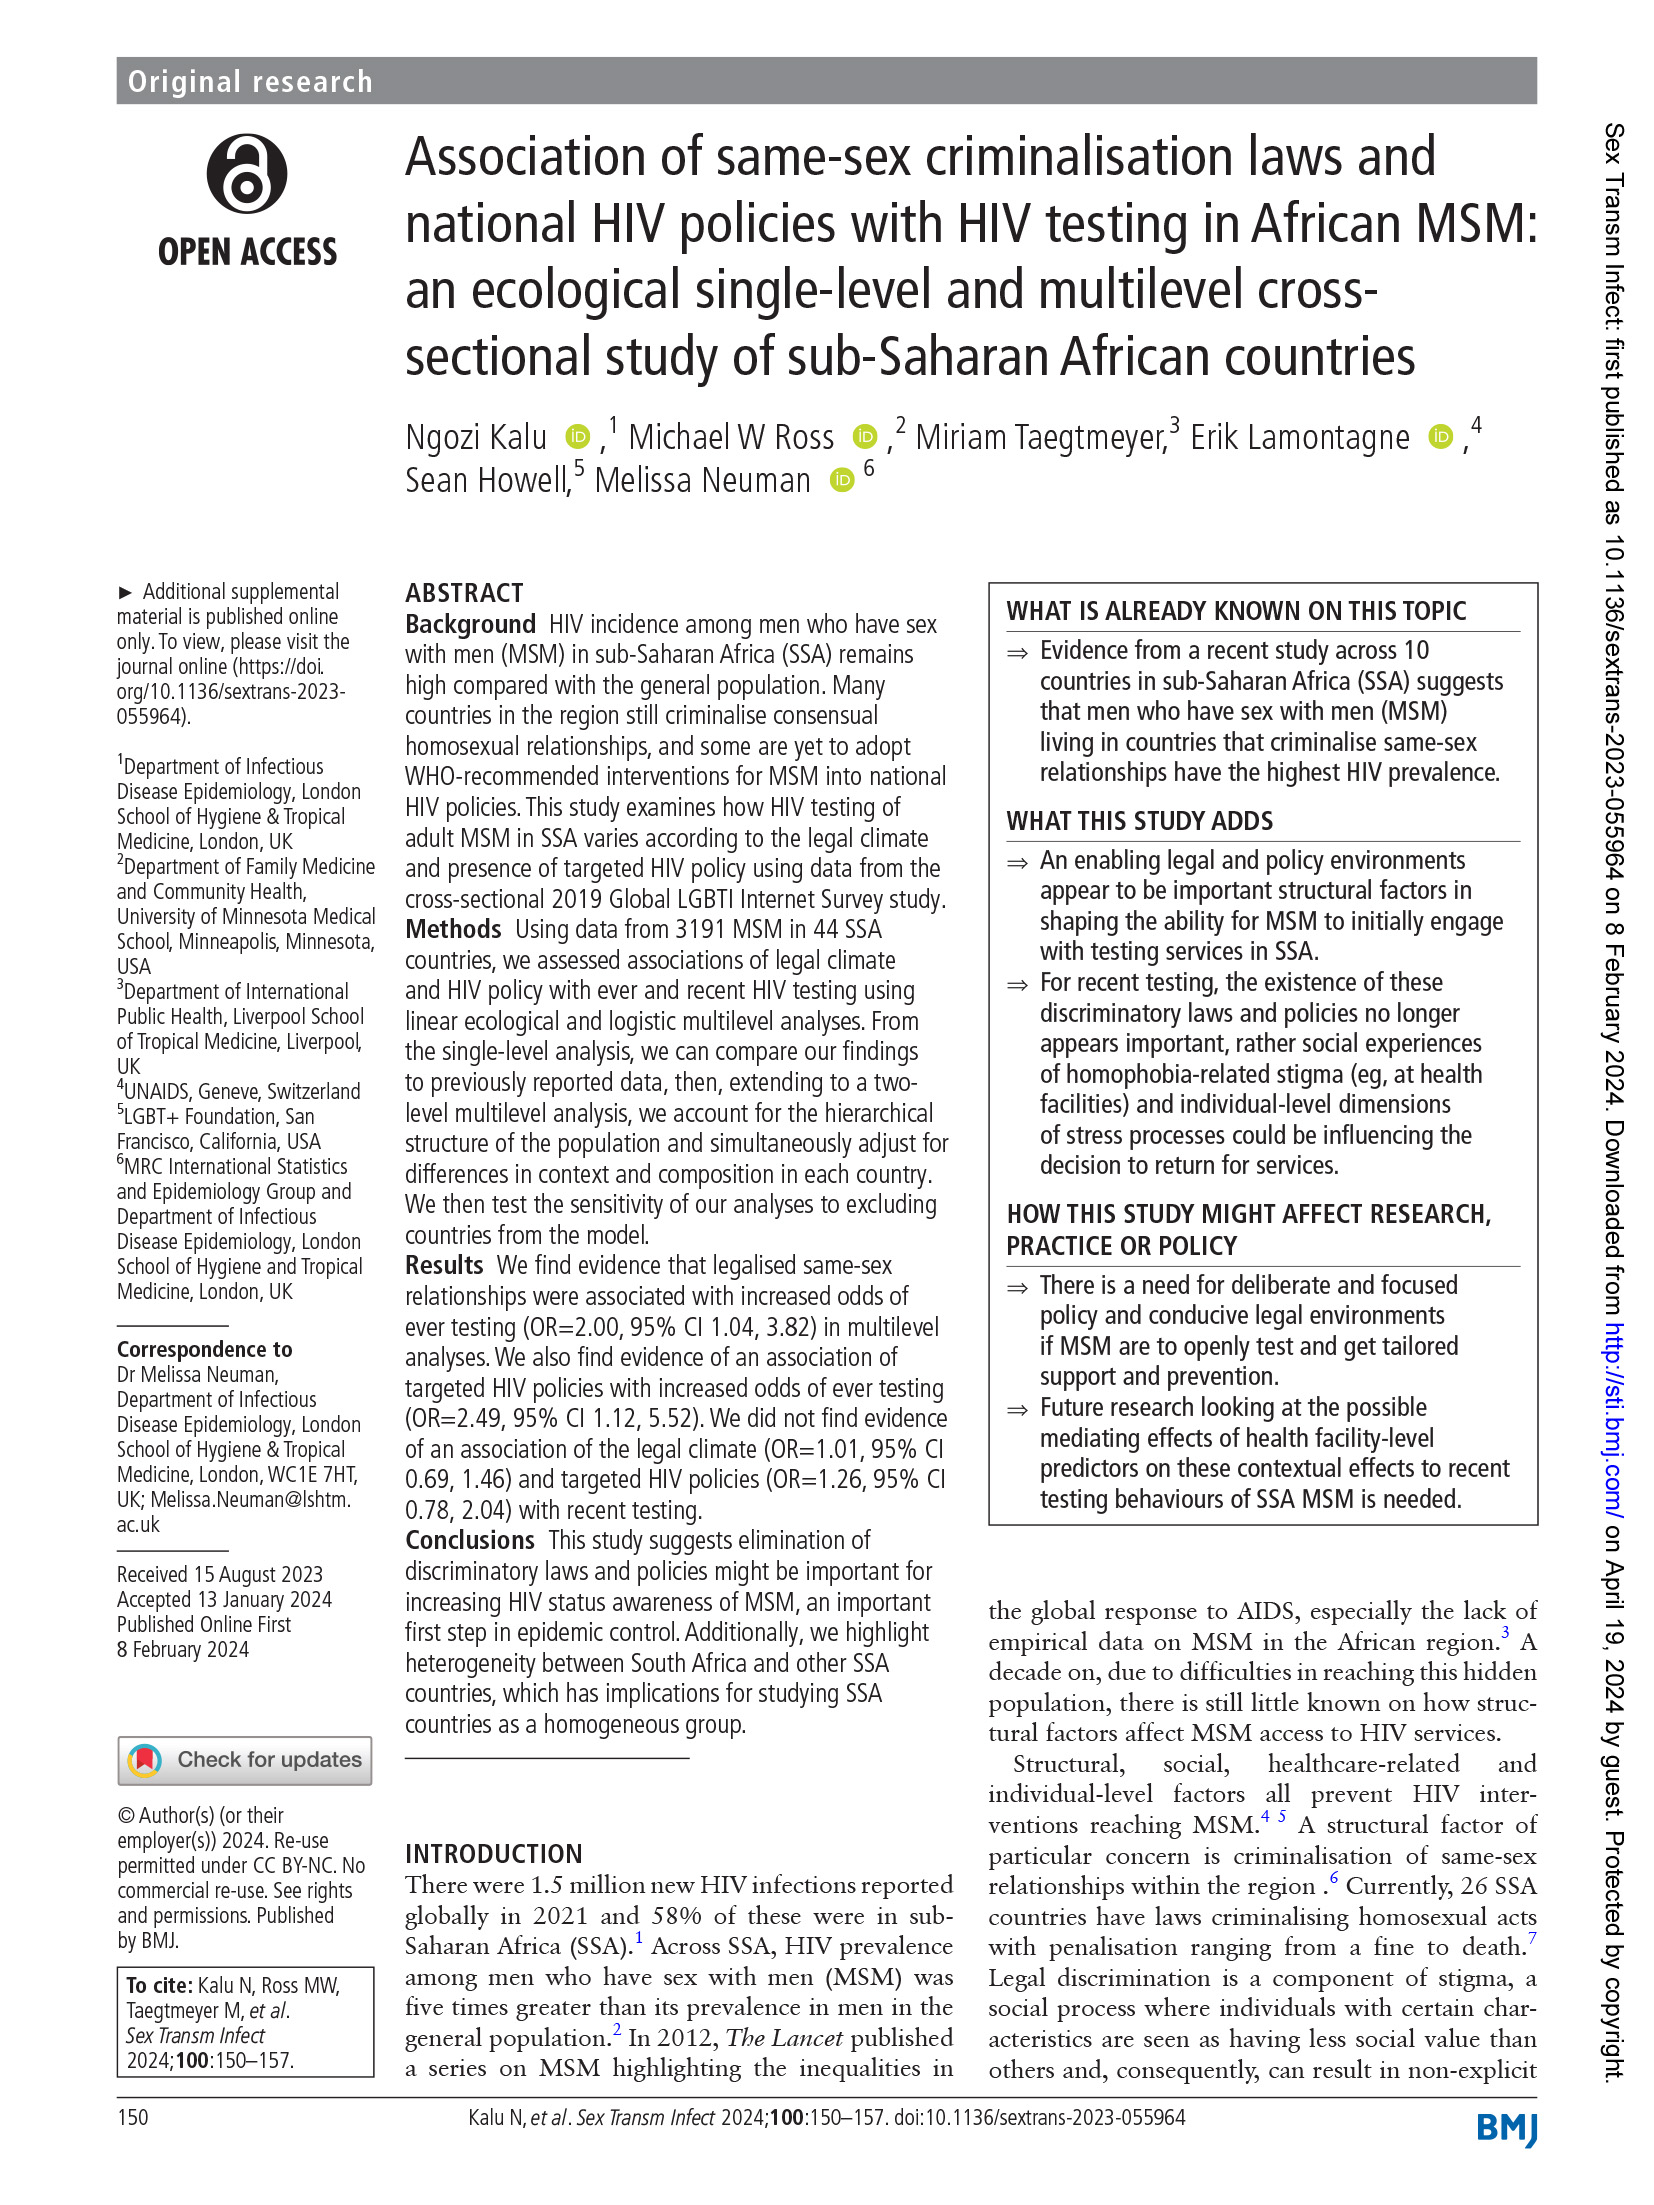 Association des lois sur la criminalisation des relations homosexuelles et des politiques nationales en matière de VIH avec le dépistage du VIH chez les HSH africains : une étude transversale écologique à un et plusieurs niveaux dans les pays d'Afrique subsaharienne - couverture